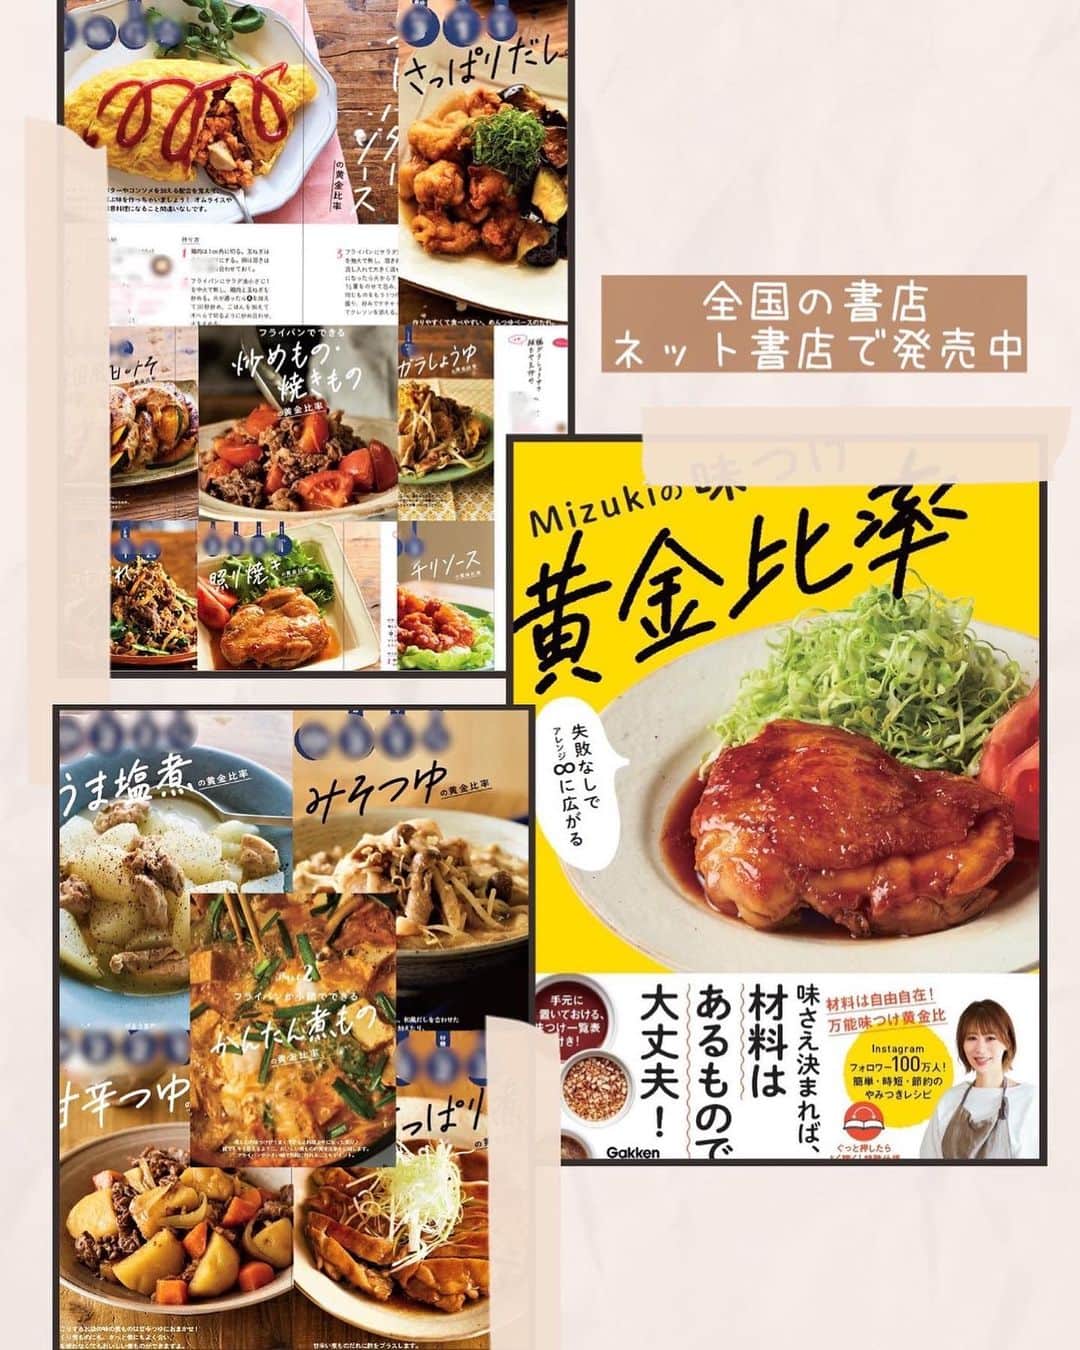 Mizuki【料理ブロガー・簡単レシピ】さんのインスタグラム写真 - (Mizuki【料理ブロガー・簡単レシピ】Instagram)「・煮るだけ簡単💕 ⁡ ［#レシピ ］ ーーーーーーーーーーーーーーーー 飲み干すおいしさ！韓国風肉豆腐 ーーーーーーーーーーーーーーーー ⁡ ⁡ ⁡ おはようございます☺️ ⁡ 今日ご紹介させていただくのは \ 韓国風肉豆腐 / ⁡ ただただ煮るだけの 超簡単お手軽レシピ💕 韓国風★といっても辛さは感じず あっさりコクのあるスープは 飲み干したくなるおいしさですよ〜🤭 ⁡ ボリュームがあってコスパもいいので よかったらお試しくださいね😋 ⁡ ⁡ ⁡ 💬💬💬 謎の暮らしアカウント作りました🏠 変なライブはこっちでやってます🤫 →(@mizuki_kurashi ) ⁡ ⁡ 【簡単・時短・節約レシピ更新中🔻】 @mizuki_31cafe ⁡ ⁡ ⁡ ＿＿＿＿＿＿＿＿＿＿＿＿＿＿＿＿＿＿＿ 【2人分】 豚しゃぶしゃぶ用肉...200g 豆腐...1丁(300g) もやし...1/2袋(100g) ニラ...1/2束 ⚫︎水...400ml ⚫︎醤油...大2 ⚫︎みりん・コチュジャン...各大1 ⚫︎砂糖...小2 ⚫︎鶏がらスープ・ごま油...各小1/2 ⚫︎にんにくチューブ...2cm ごま...適量 ⁡ 1.豆腐は8等分に、ニラは4cm長さに切る。 2.鍋に⚫︎を入れて中火にかけ、煮立ったら豚肉を加えてほぐし、豆腐も加えて5分煮る。 3.もやしを加えてさっと煮、仕上げにニラを加えてごまを振る。 ￣￣￣￣￣￣￣￣￣￣￣￣￣￣￣￣￣￣￣ ⁡ ⁡ 《ポイント》 ♦︎豆腐は絹でも木綿でもOK！(今回木綿) ♦︎あっさりコクのある味わいで、辛さはほぼ感じません♩濃いめの味や辛さを出したい方はコチュジャンを増量してください♩ ♦︎もやしの代わりにキャベツやきのこを加えても◎ ⁡ ⁡ ⁡ ⁡ ⁡ ⁡ 💬💬💬 昨日はライブにお付き合いいただきまして ありがとうございました☺️ 久しぶりの出張ライブでド緊張しましたが 温かく見守っていただいて 本当に有難かったです😭🌸涙 ⁡ 昨日会場には 30名のお客様にいらしていただいて ライブ後はショウルームを回ったり お話ししたり写真を撮っていただいたり とっても楽しい時間を過ごしました✨ 実際お顔を見てお話しできるのって すごくすごく幸せですね🥺🌸 ⁡ そしてなんだろう••• はじめて会った気がしないというか💦 ライブやオンライン教室にご参加いただいたり 普段コメントをいただいたりしているからか もうずっと前から知っているような 不思議な気持ちになっていました☺️ ⁡ いつかまたこうして お会いできる機会がありますように🥰 今回こんな機会を作ってくださった パナソニックさん(@sumai_panasonic ) にも 心から感謝申し上げます🥲💕 本当にありがとうございました🥰 ⁡ ⁡ ⁡ ⁡ ⁡ ⁡ 𖤣𖥧𖥣𖡡𖥧𖤣✨ 愛用している調理器具や器などは #楽天ROOMに載せてます ‎𐩢𐩺 (ハイライトから飛べます🛍) ⁡ ⁡ ⁡ ⁡ ⁡ ⁡ 🔶全国の書店・ネット書店で発売中🔶 ⁡ ✼••┈┈┈┈┈••✼••┈┈┈┈┈••✼ 今日のごはんこれに決まり！ ‎𓊆#Mizukiのレシピノート 500品𓊇 ✼••┈┈┈┈┈••✼••┈┈┈┈┈••✼ ⁡ ˗ˏˋ おかげさまで25万部突破 ˎˊ˗ 料理レシピ本大賞準大賞を受賞しました🙇‍♀️ ⁡ 6000点の中からレシピを厳選し まさかの【500レシピ掲載】❣️ 肉や魚のメインおかずはもちろん 副菜、丼、麺、スープ、お菓子 ハレの日のレシピ、鍋のレシピまで 全てこの一冊で完結𓌉◯𓇋✨ ⁡ ⁡ ⁡ ⁡ ✼••┈┈┈••✼••┈┈┈••✼ Mizukiのカンタン手作り   𓊆 #3時のおやつ 𓊇 ✼••┈┈┈••✼••┈┈┈••✼ ⁡ 『3分クッキング』で連載中の 「Mizukiのカンタン手作り」 ‎4年分のおやつが1冊になりました！ ❝オーブンなしで❞ 身近な材料と道具でできる 簡単、手軽なおやつを80品🍪 ⁡ ⁡ ⁡ ⁡ ⁡ #韓国風肉豆腐m #韓国風肉豆腐 #豚肉 #豆腐レシピ #もやしレシピ #ニラレシピ #煮るだけ #肉豆腐 #節約料理 #簡単料理  #時短料理 #料理 #mizukiレシピ  #アルモンデ #時短レシピ #節約レシピ #簡単レシピ」5月28日 7時58分 - mizuki_31cafe